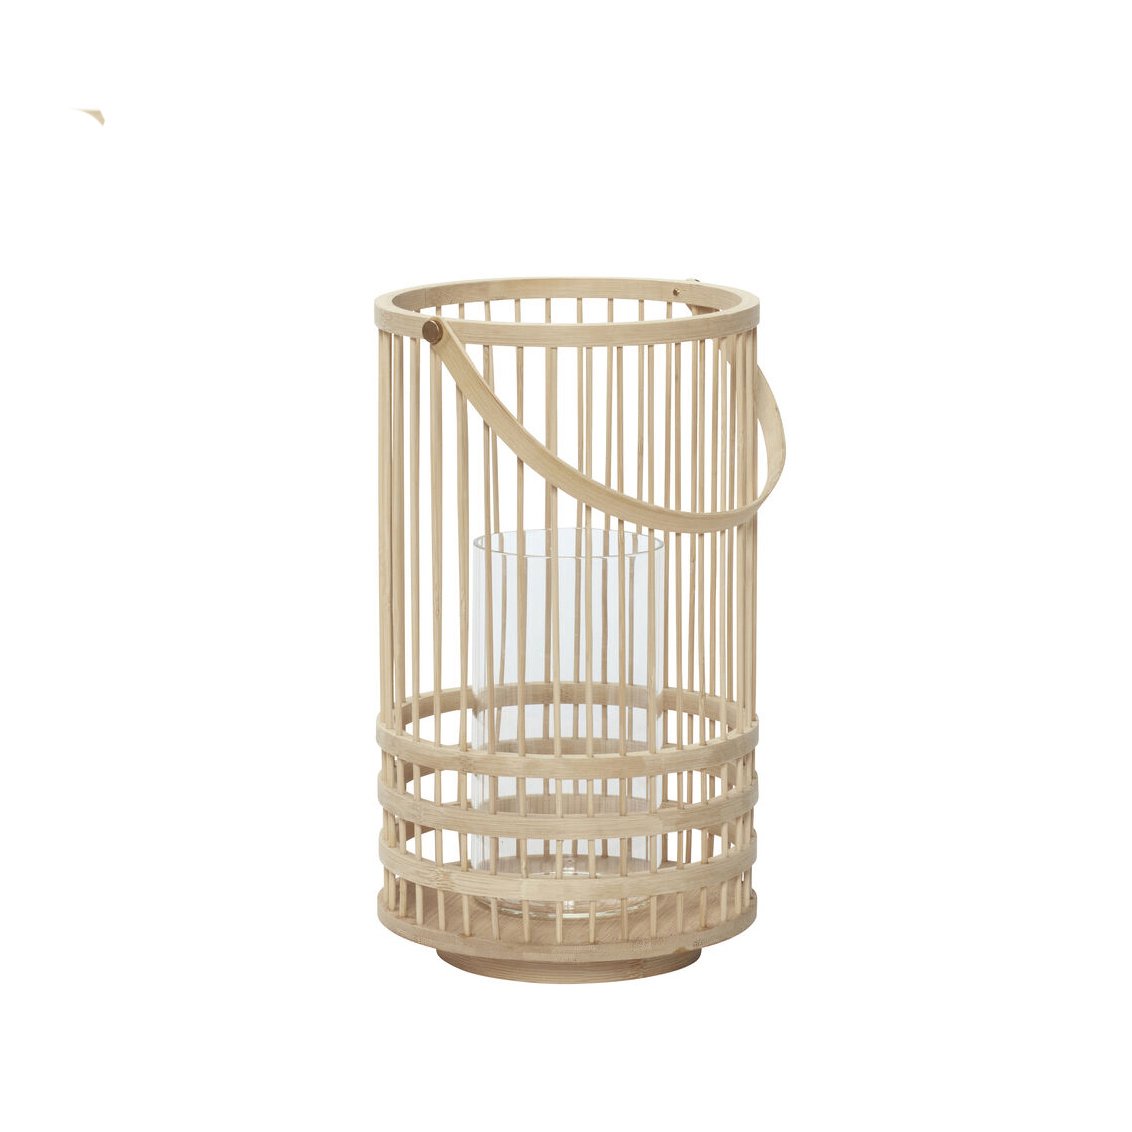 Hubsch Bamboo Outdoor Lantern in Medium Size